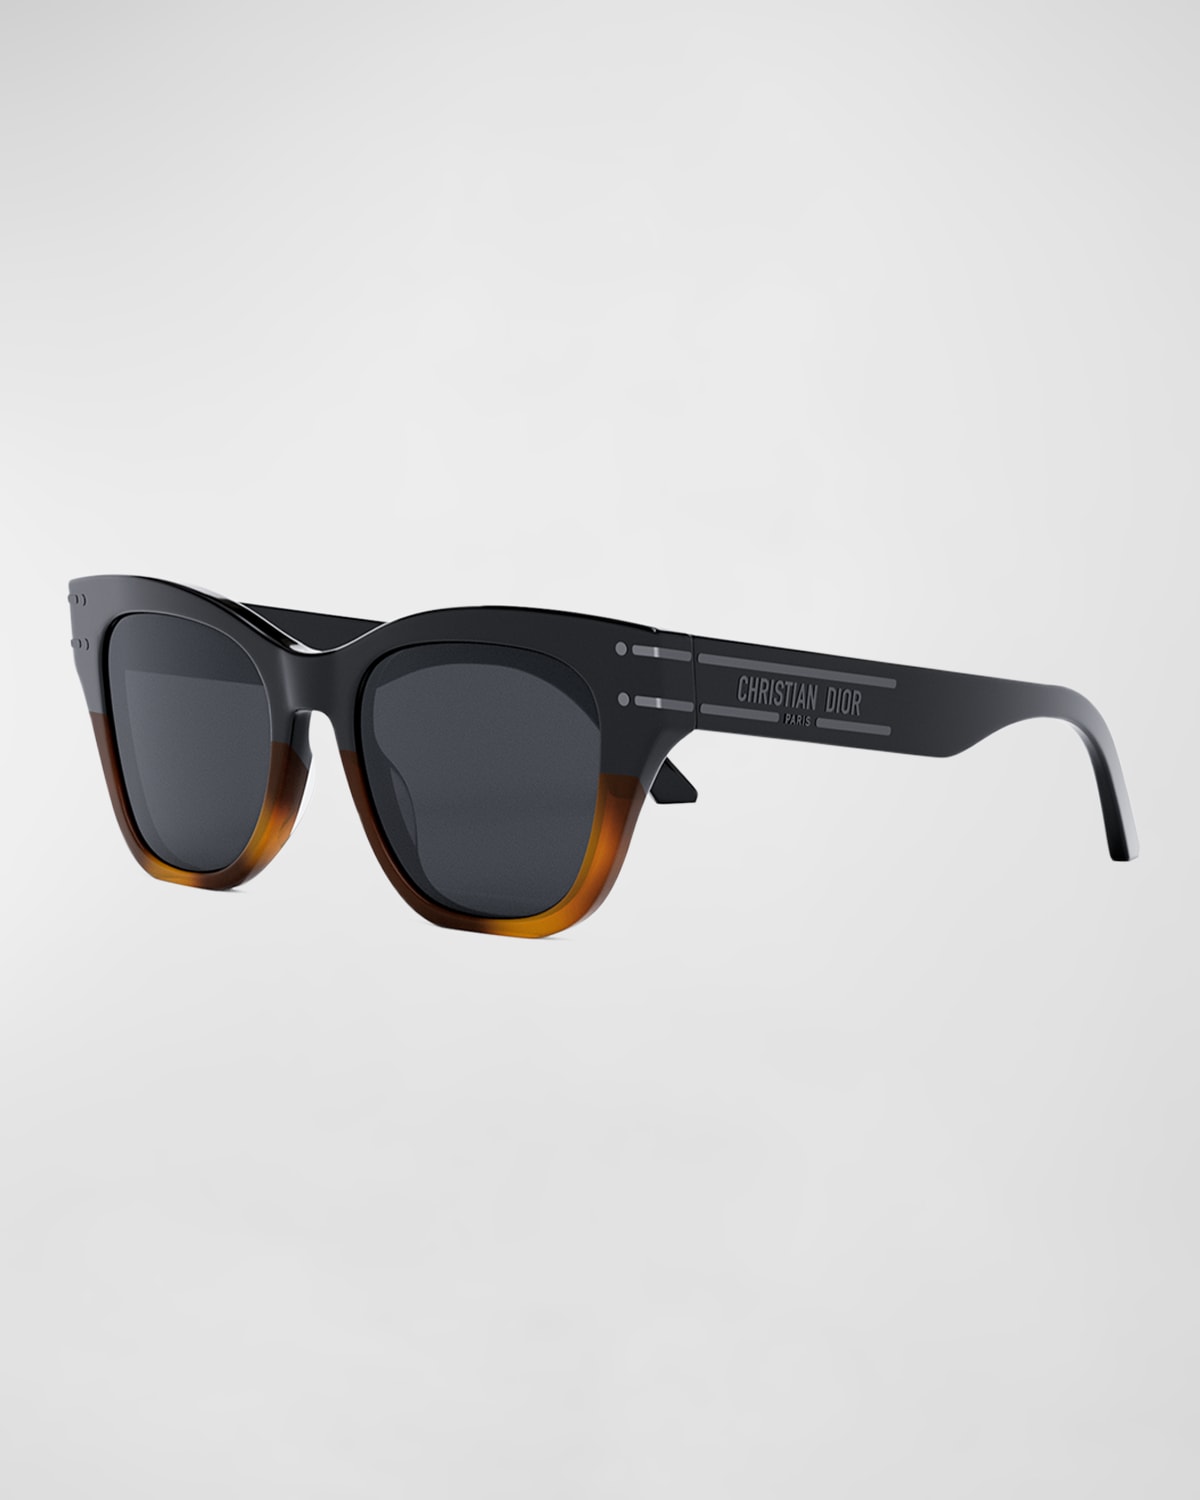 DiorSignature B4I Sunglasses